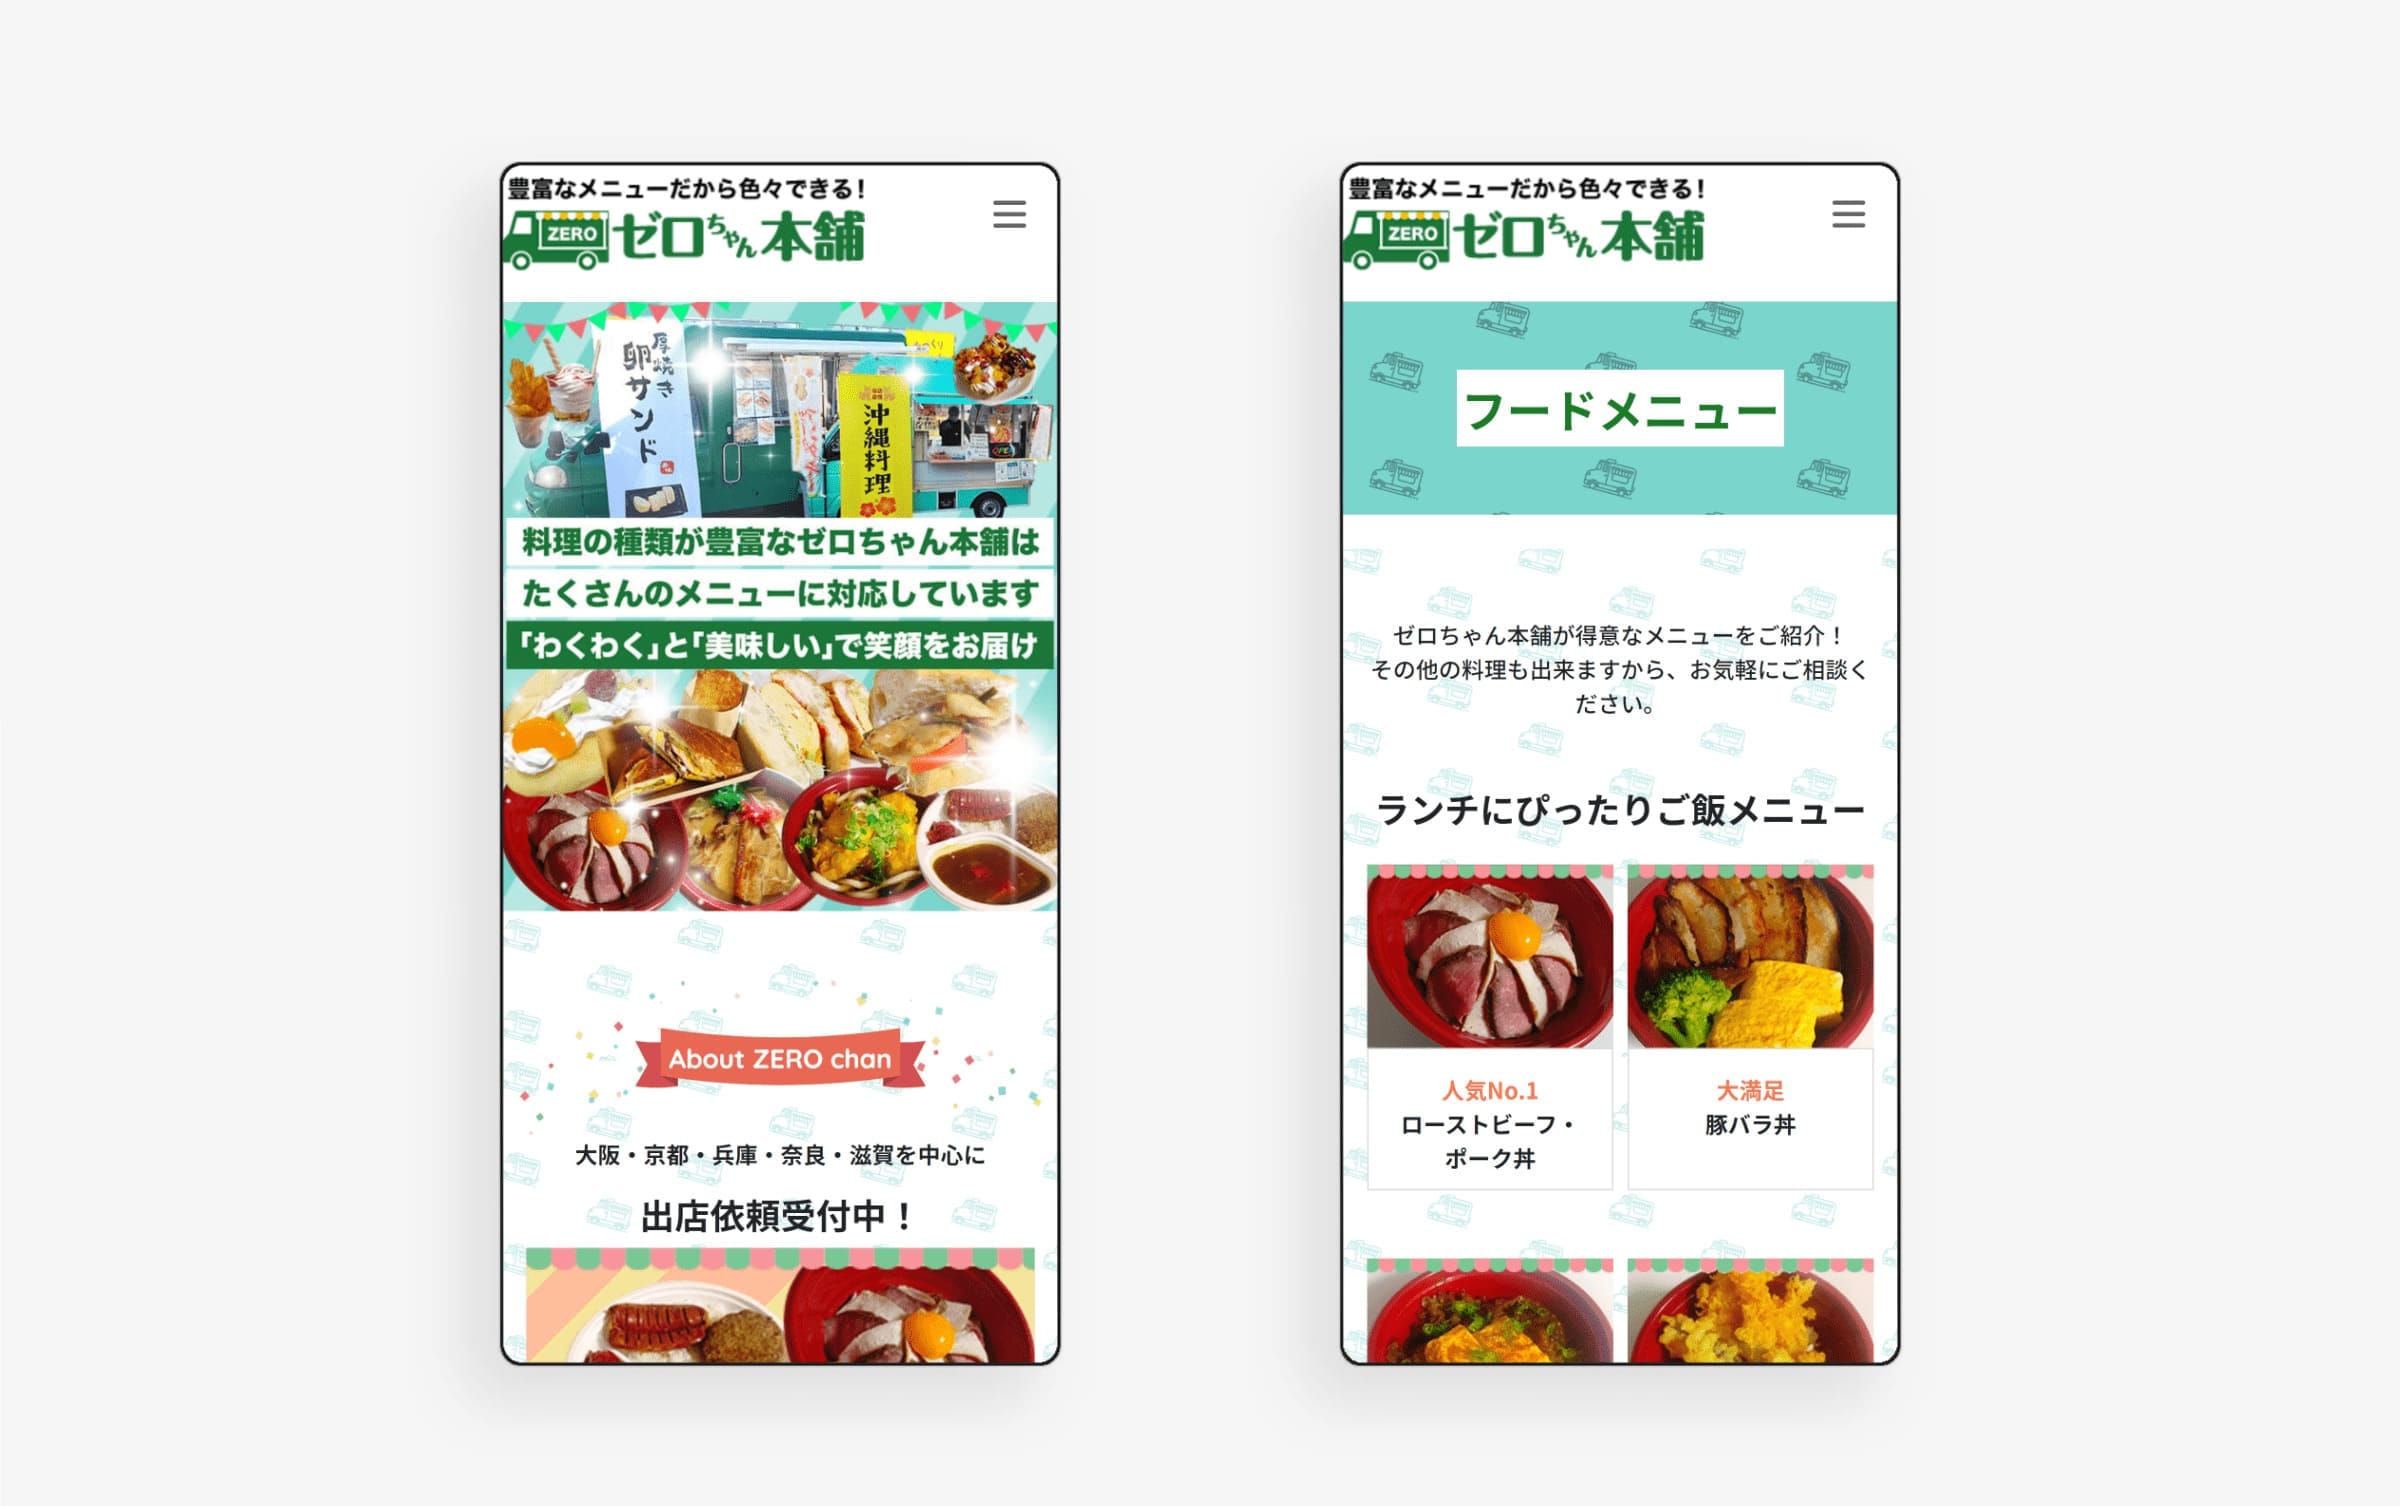 制作したキッチンカーホームページをスマートフォンで表示した時の画像